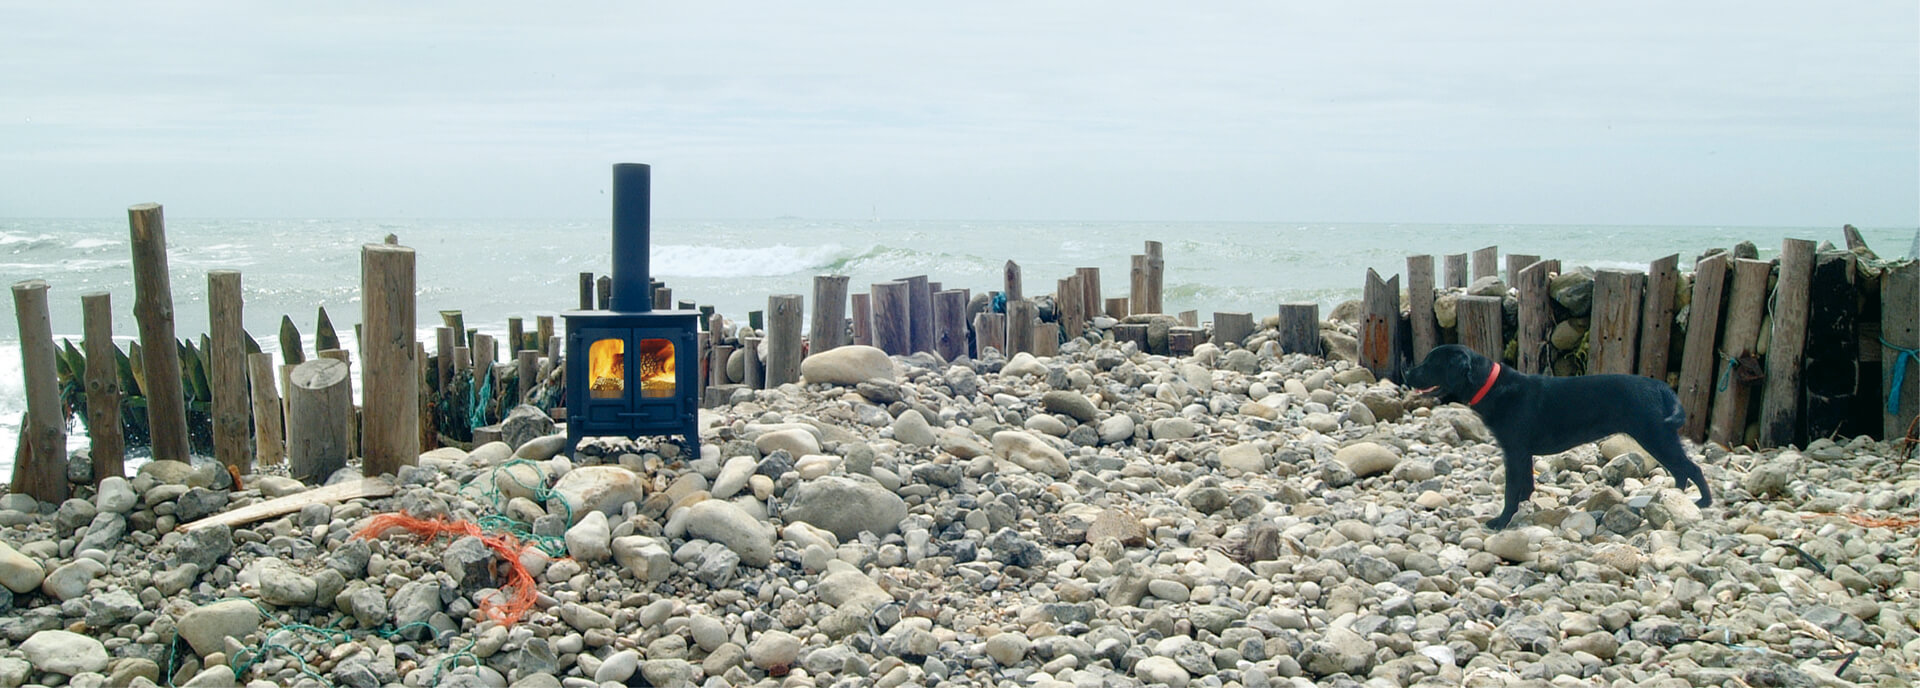 island I wood burning stove